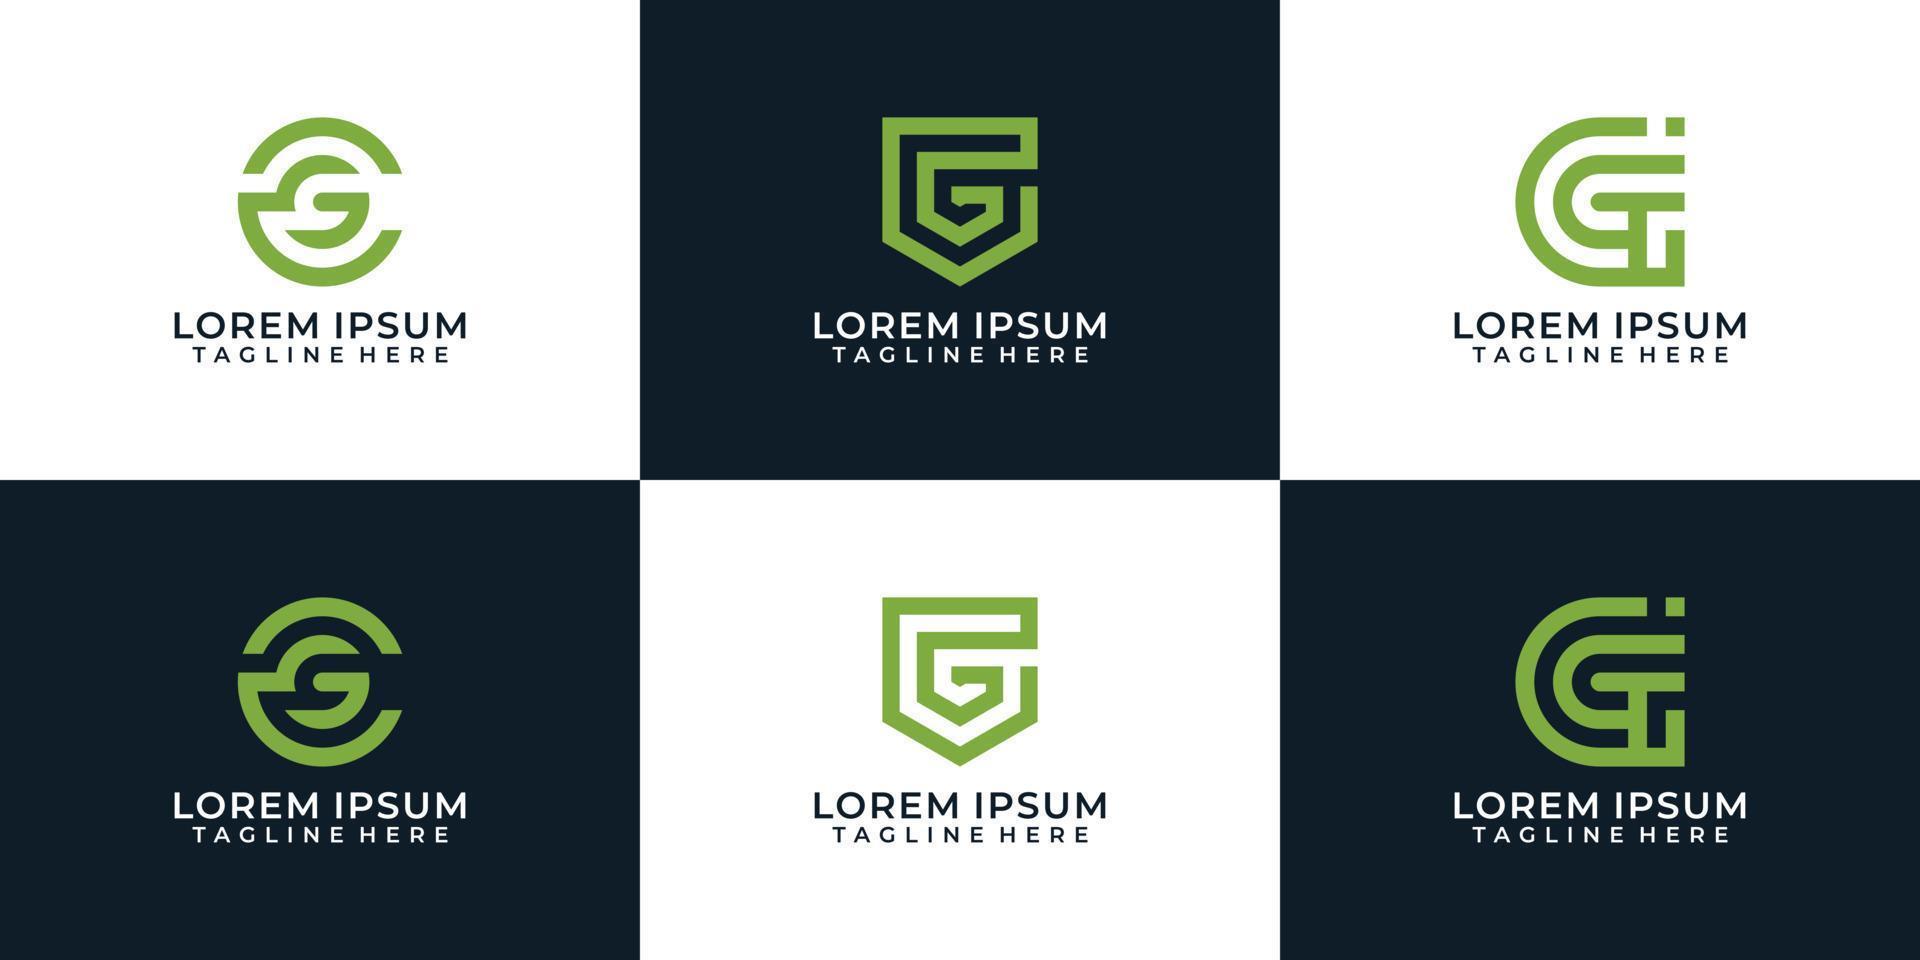 conjunto de inspiración de plantilla de diseños de logotipo de letra g creativa vector